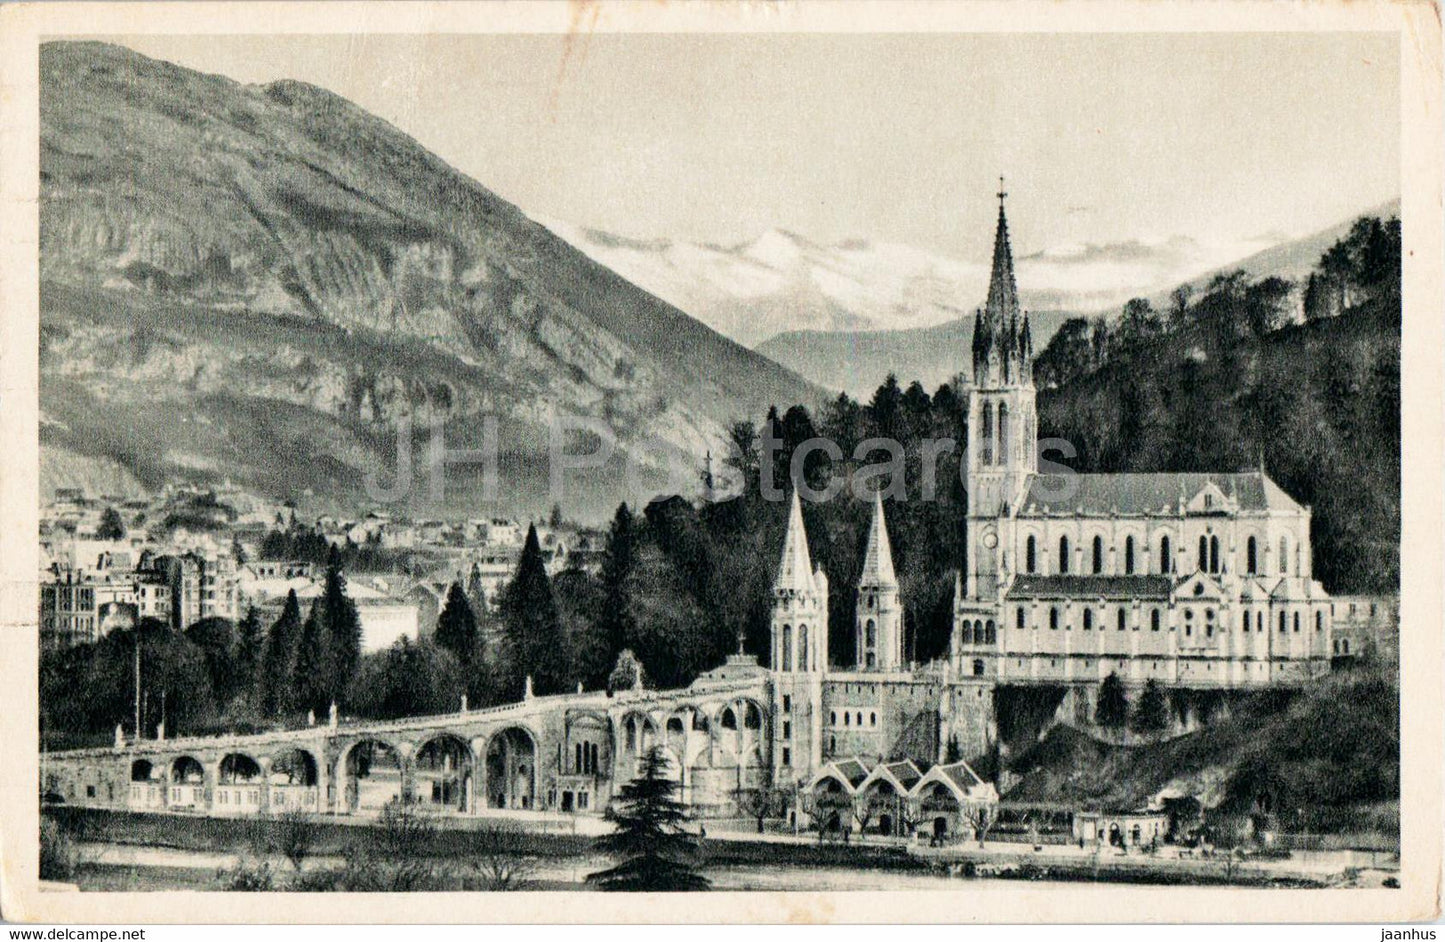 Lourdes - La Basilique et le Pic du Jer  - 37 - old postcard - France - used - JH Postcards